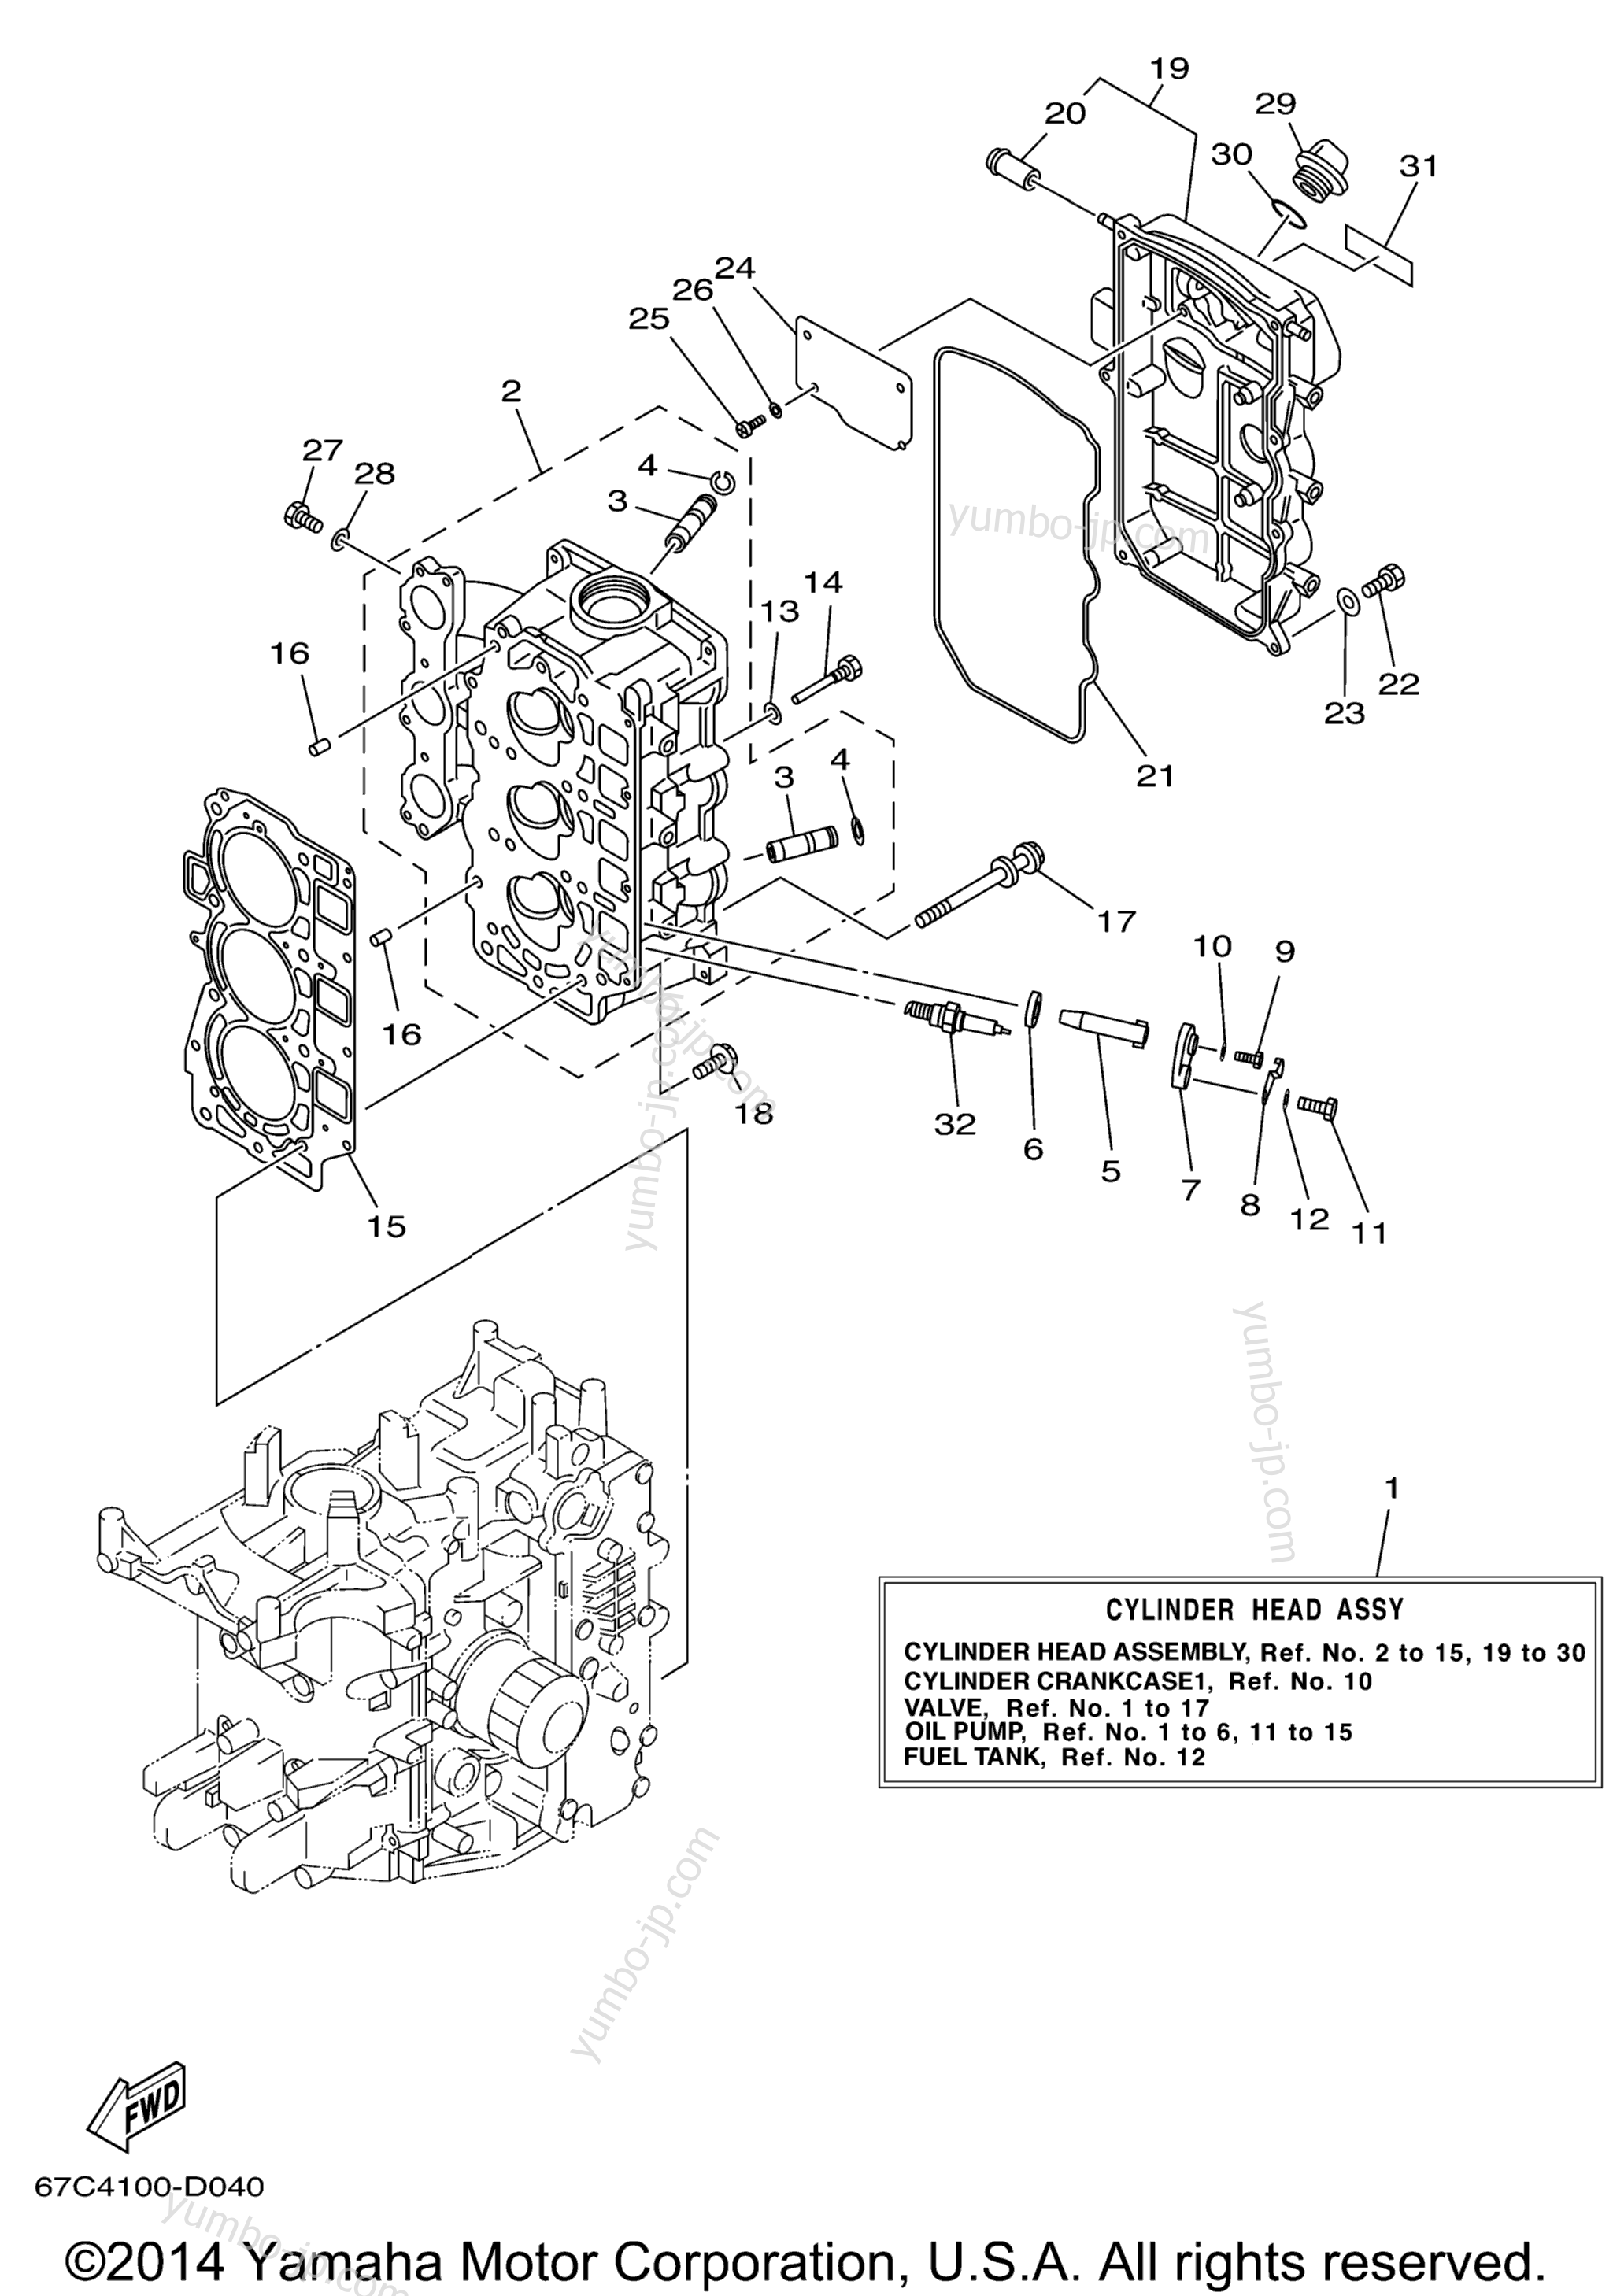 Головка блока цилиндров для лодочных моторов YAMAHA F40TLRD_MSHD_MLHD_MJHD_ELRD (F40EJRD) 2005 г.